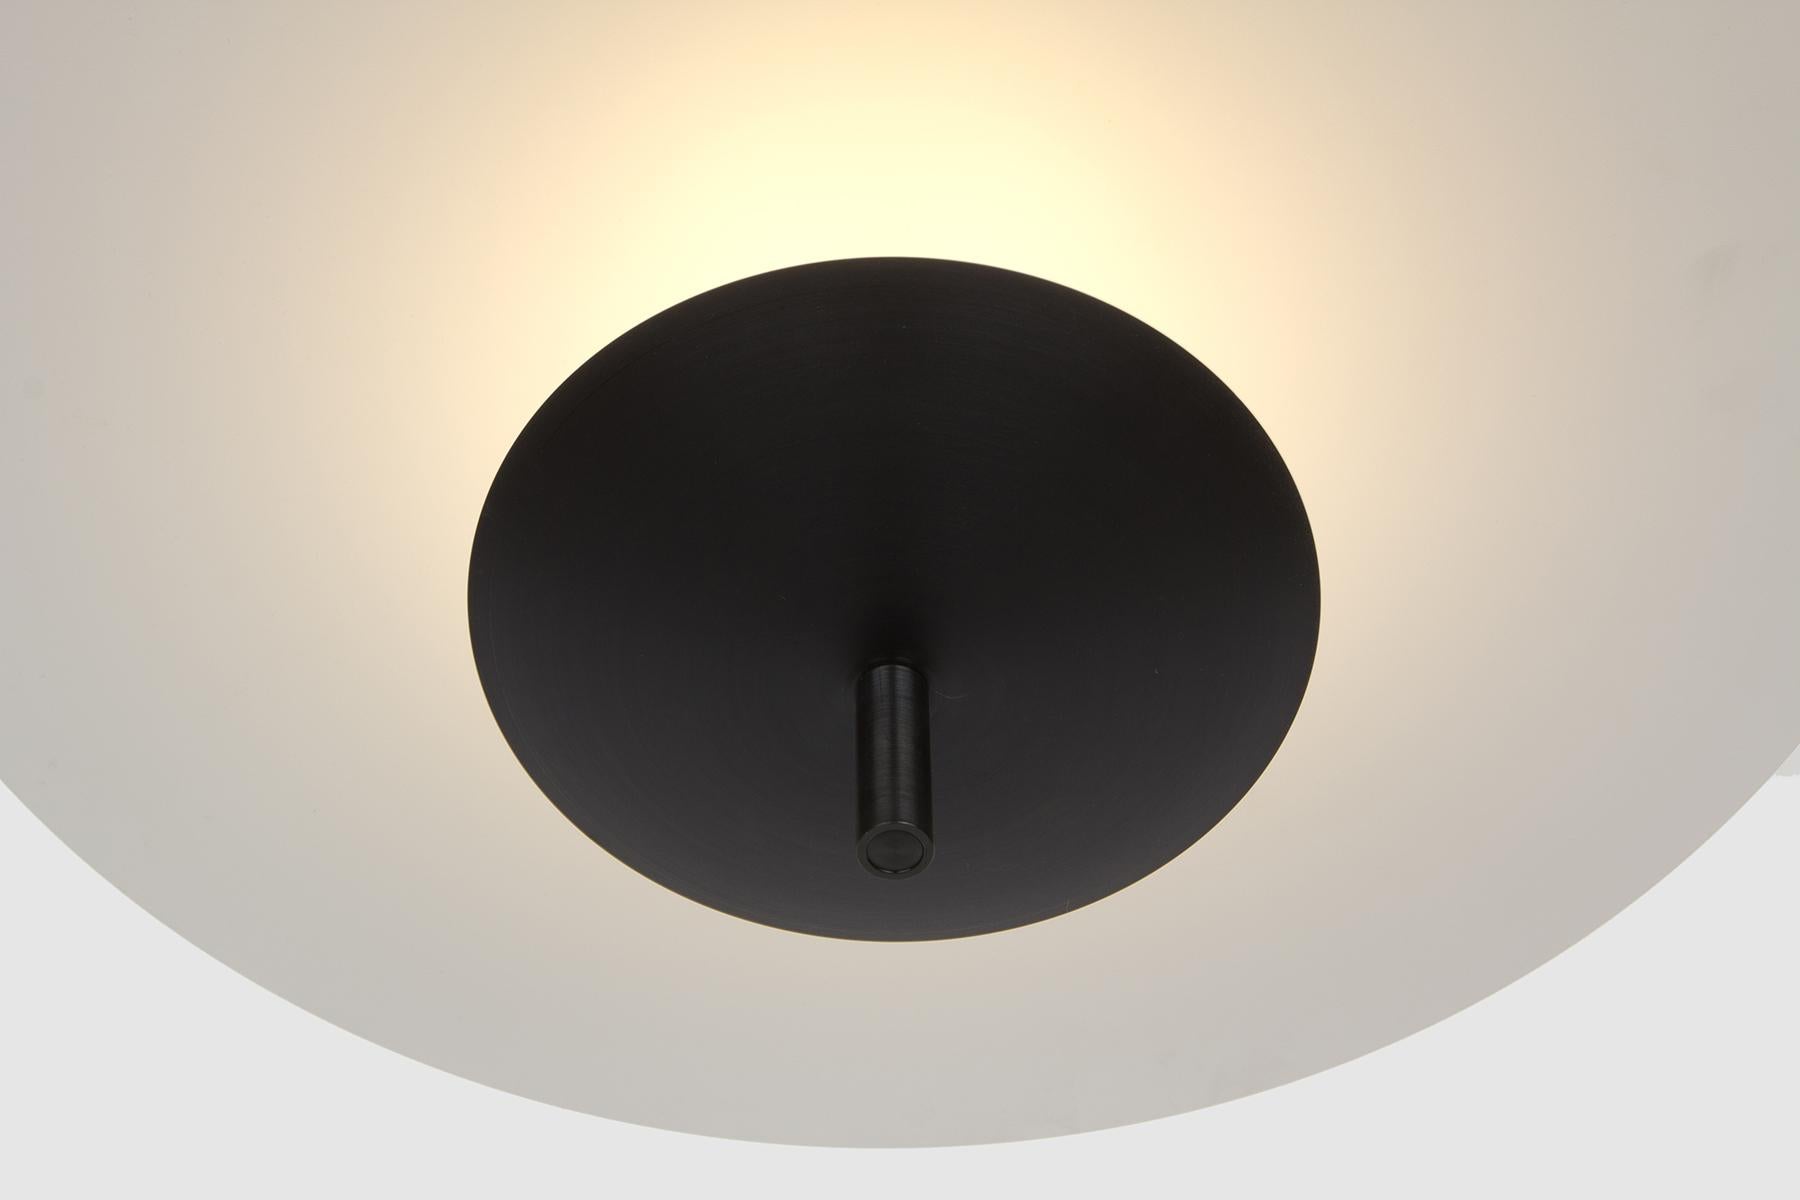 La suspension Reflector est une option d'éclairage doux sophistiquée qui convient aux tables à manger, aux espaces de travail, aux couloirs et à d'autres environnements intérieurs qui nécessitent une expérience d'éclairage diffus et chaleureux. 

La